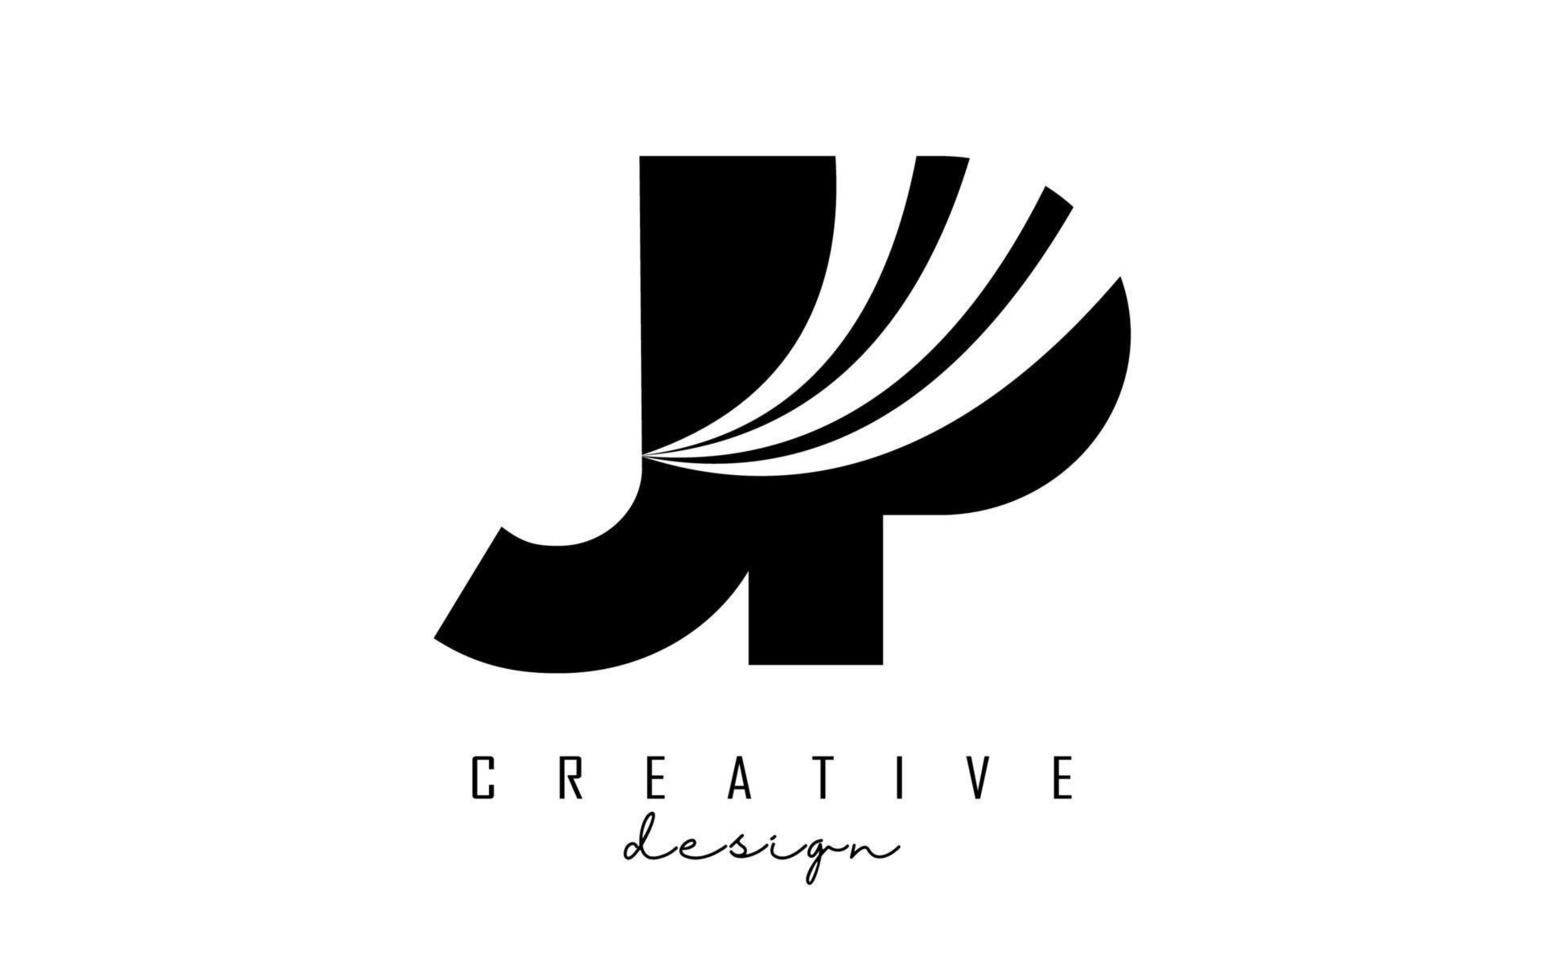 kreative schwarze buchstaben jp jp logo mit führenden linien und straßenkonzeptdesign. Buchstaben mit geometrischem Design. vektor